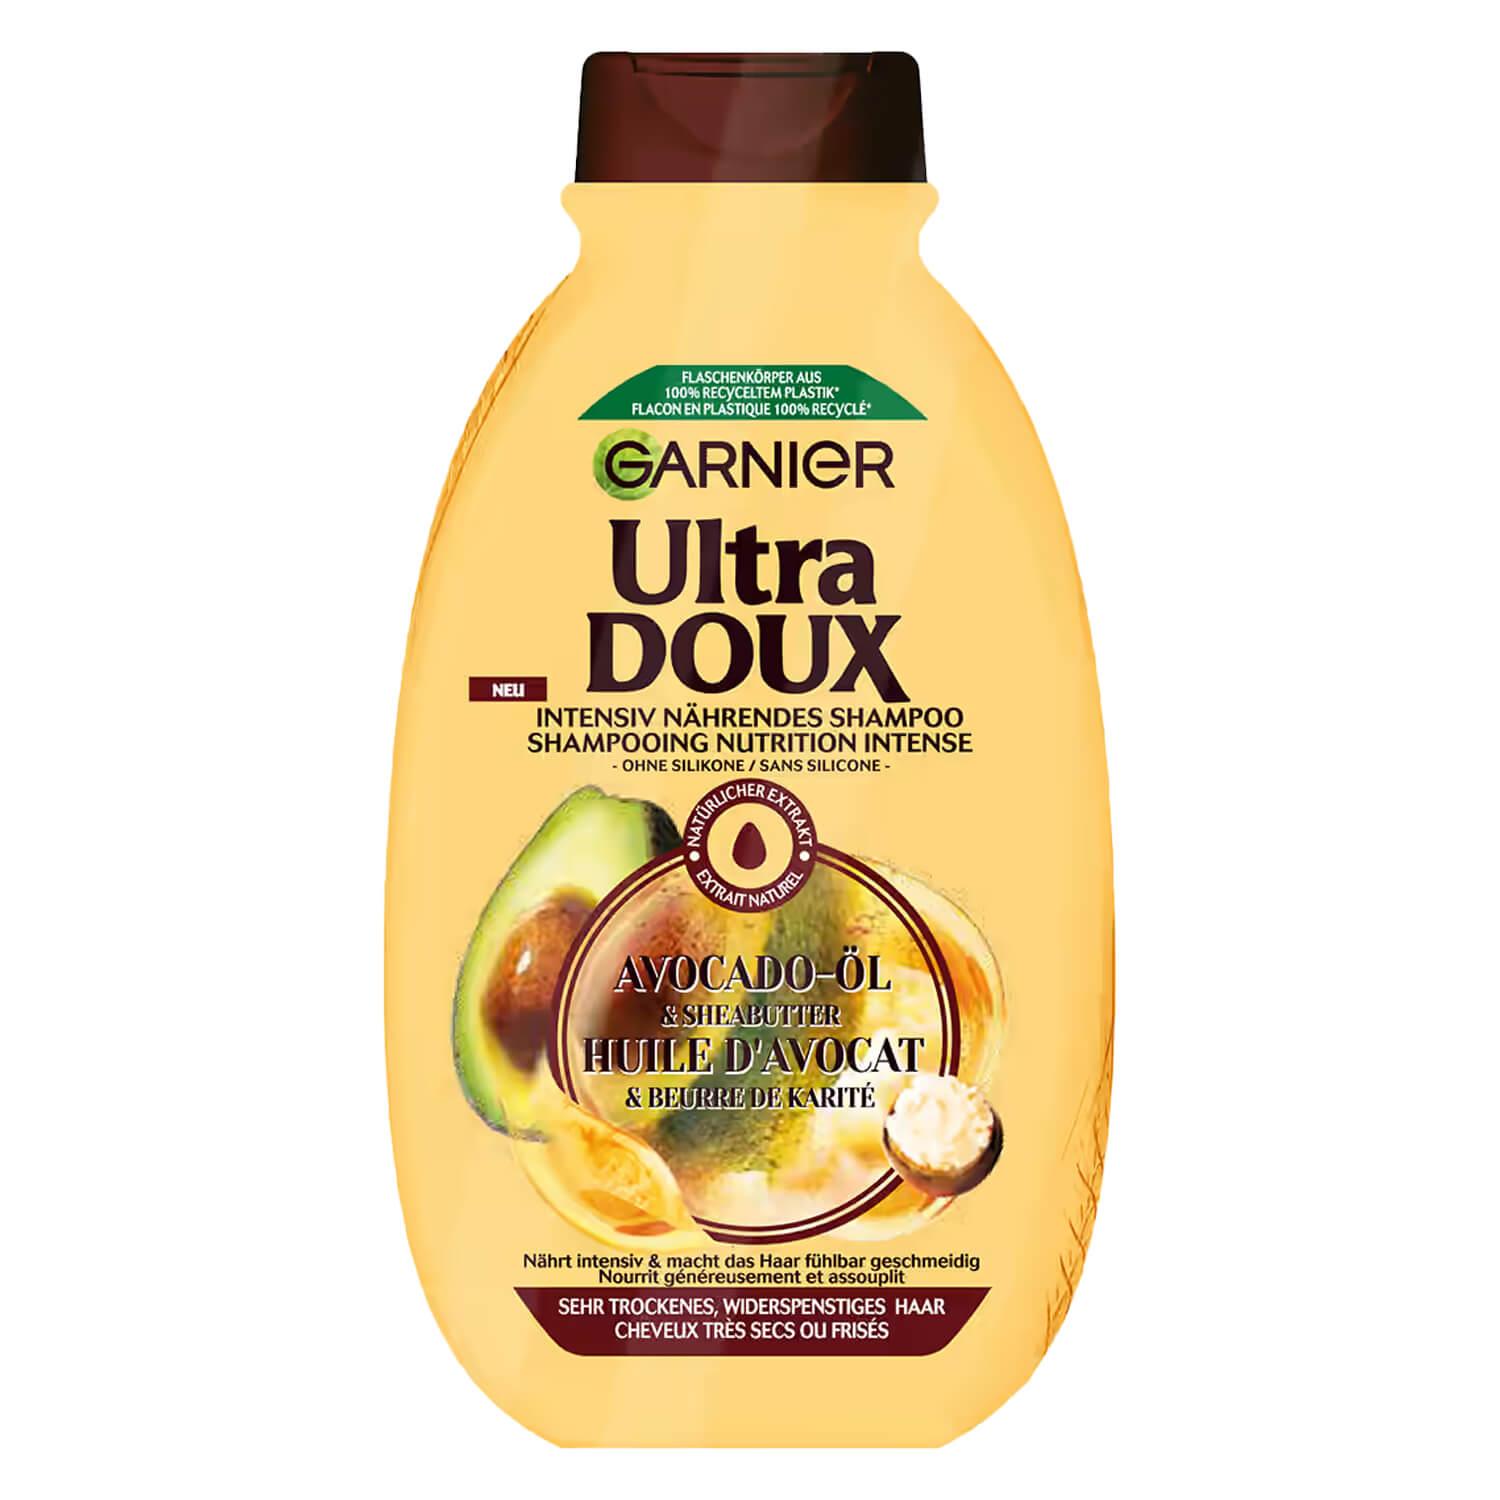 Ultra Doux Haircare - Avocado-Öl & Sheabutter Shampoo